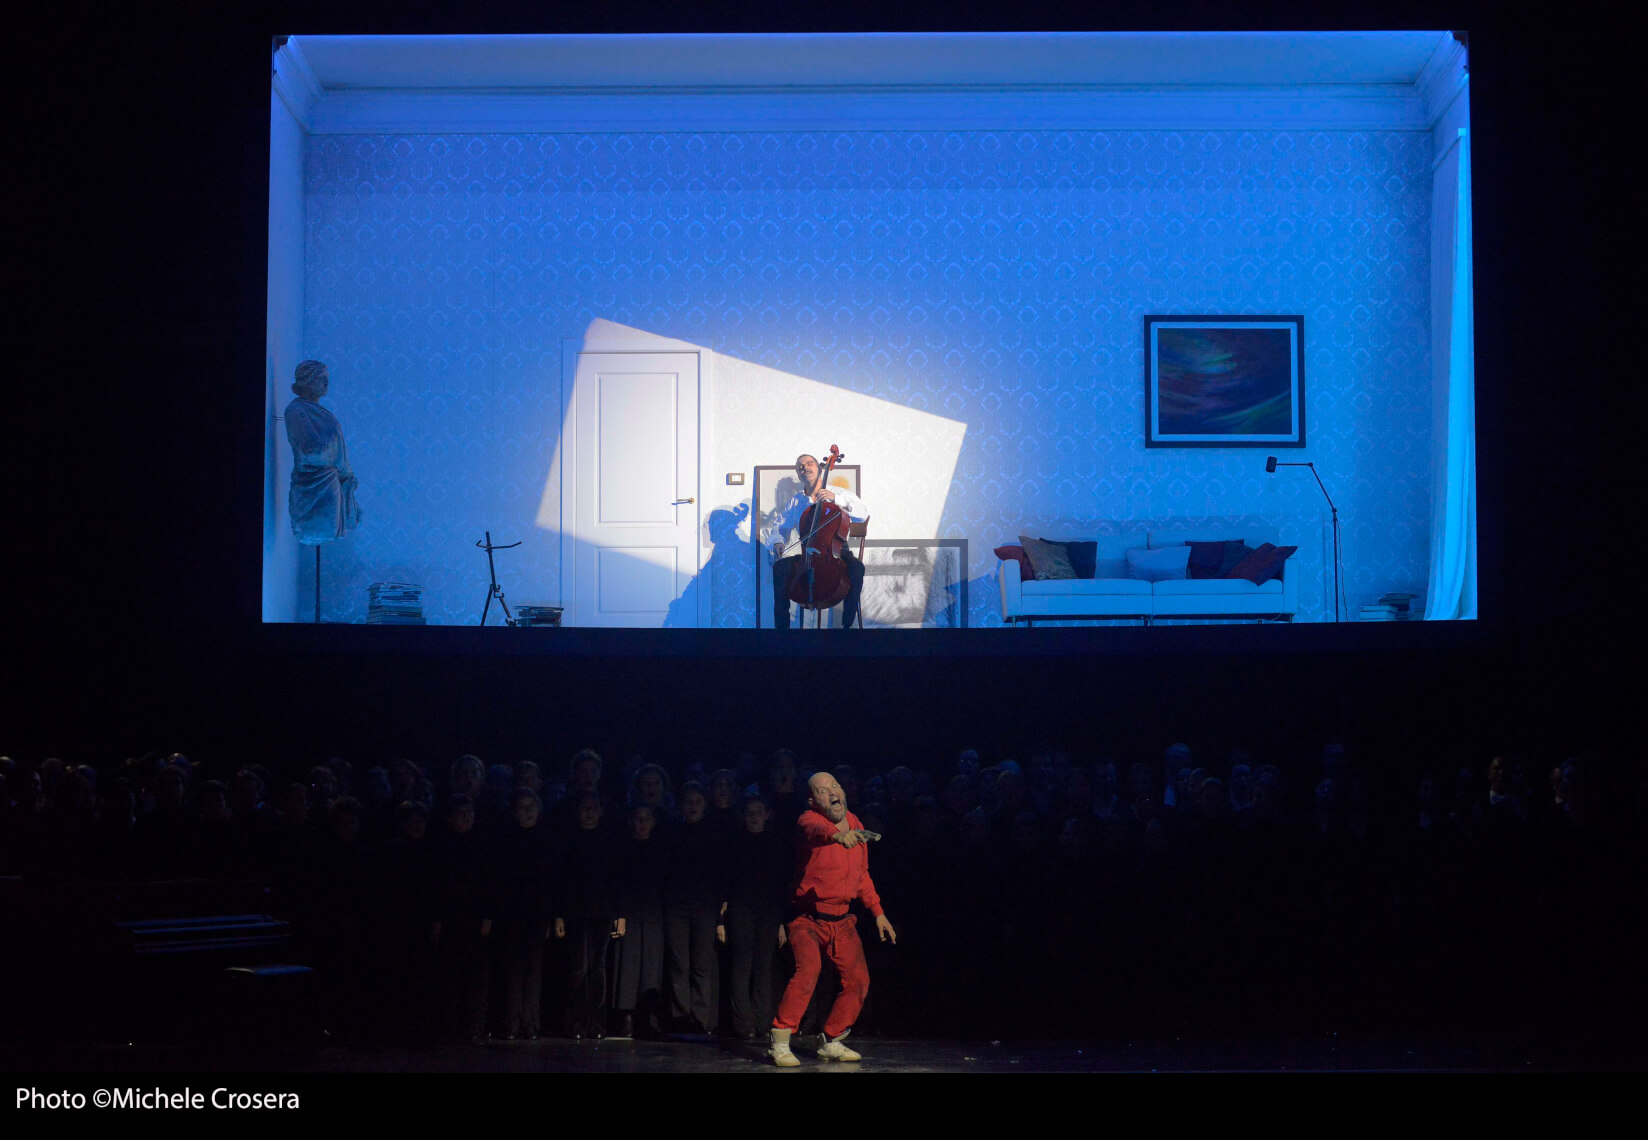 Faust erwartet Cello spielend den Tod, für Mefistofele ist er verloren. (© Michel Crosera)